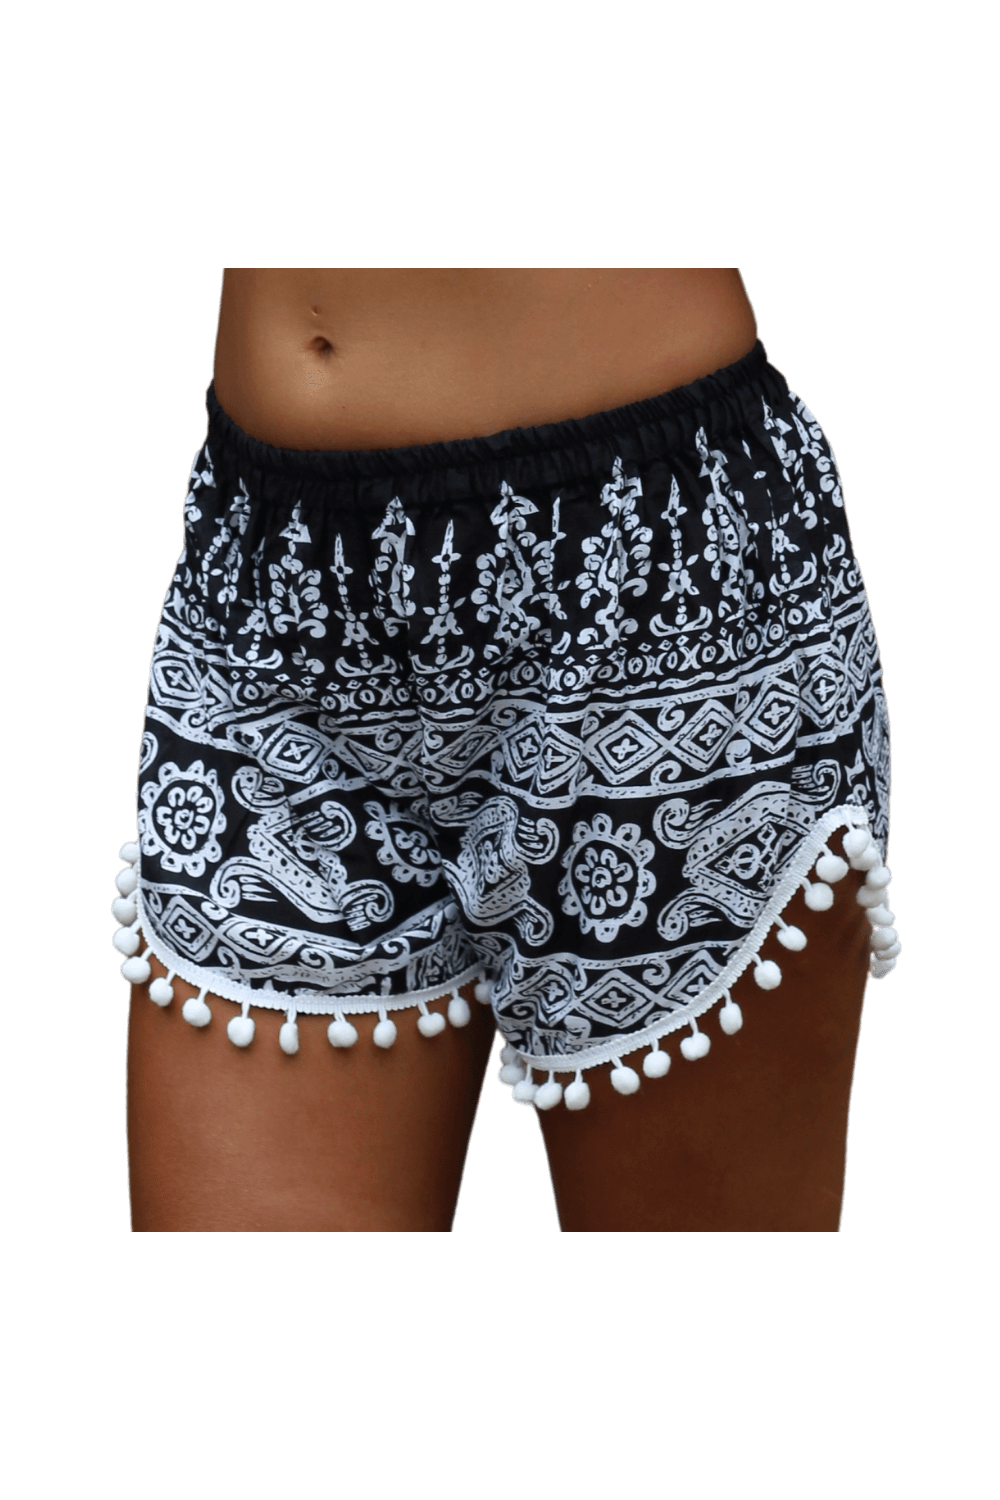 Black Aztec Shorts. Boho shorts from Bohemian Island